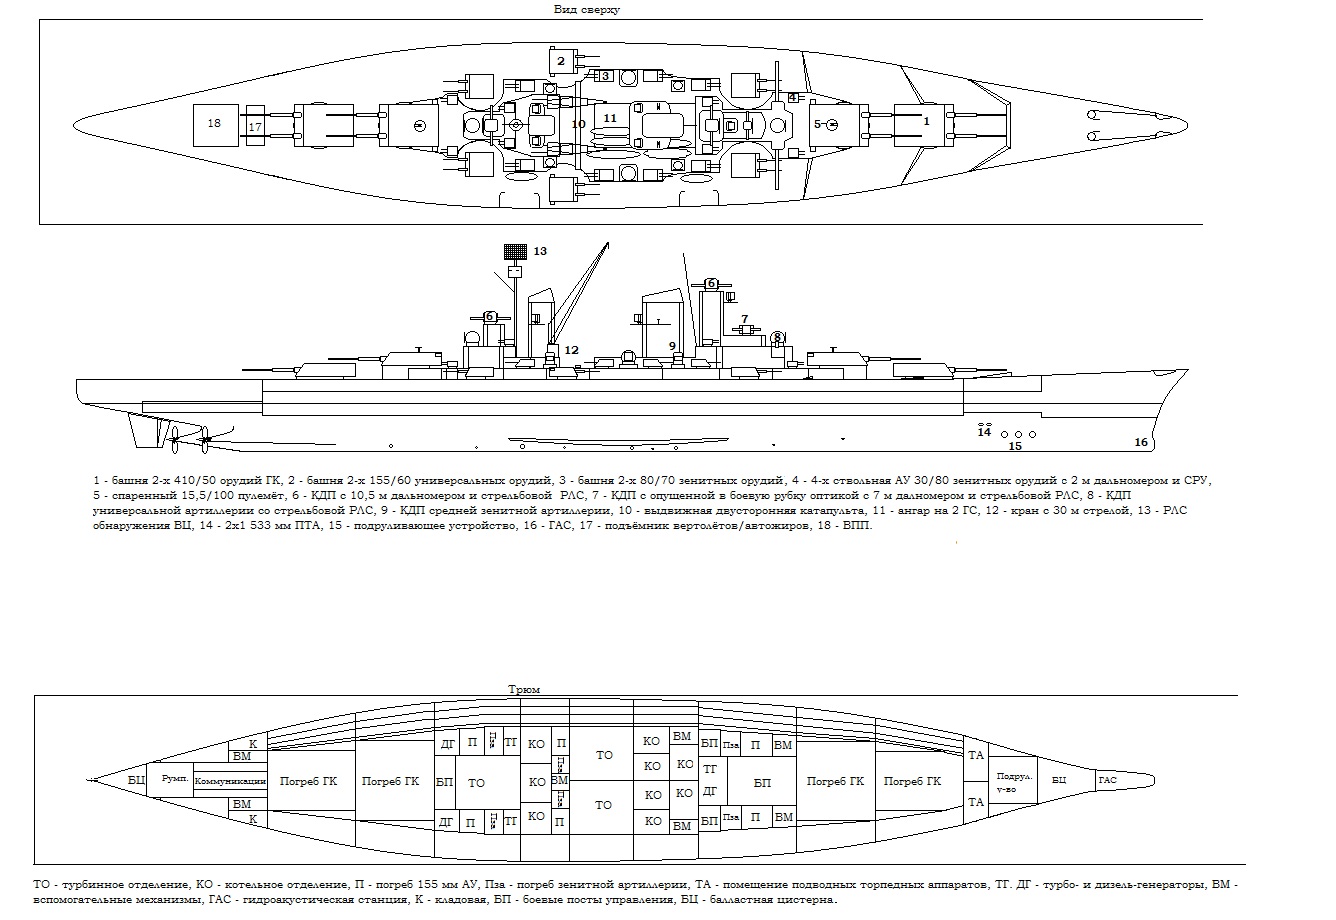 Эскизный проект альтернативного линкора проекта Н 39. Германия..